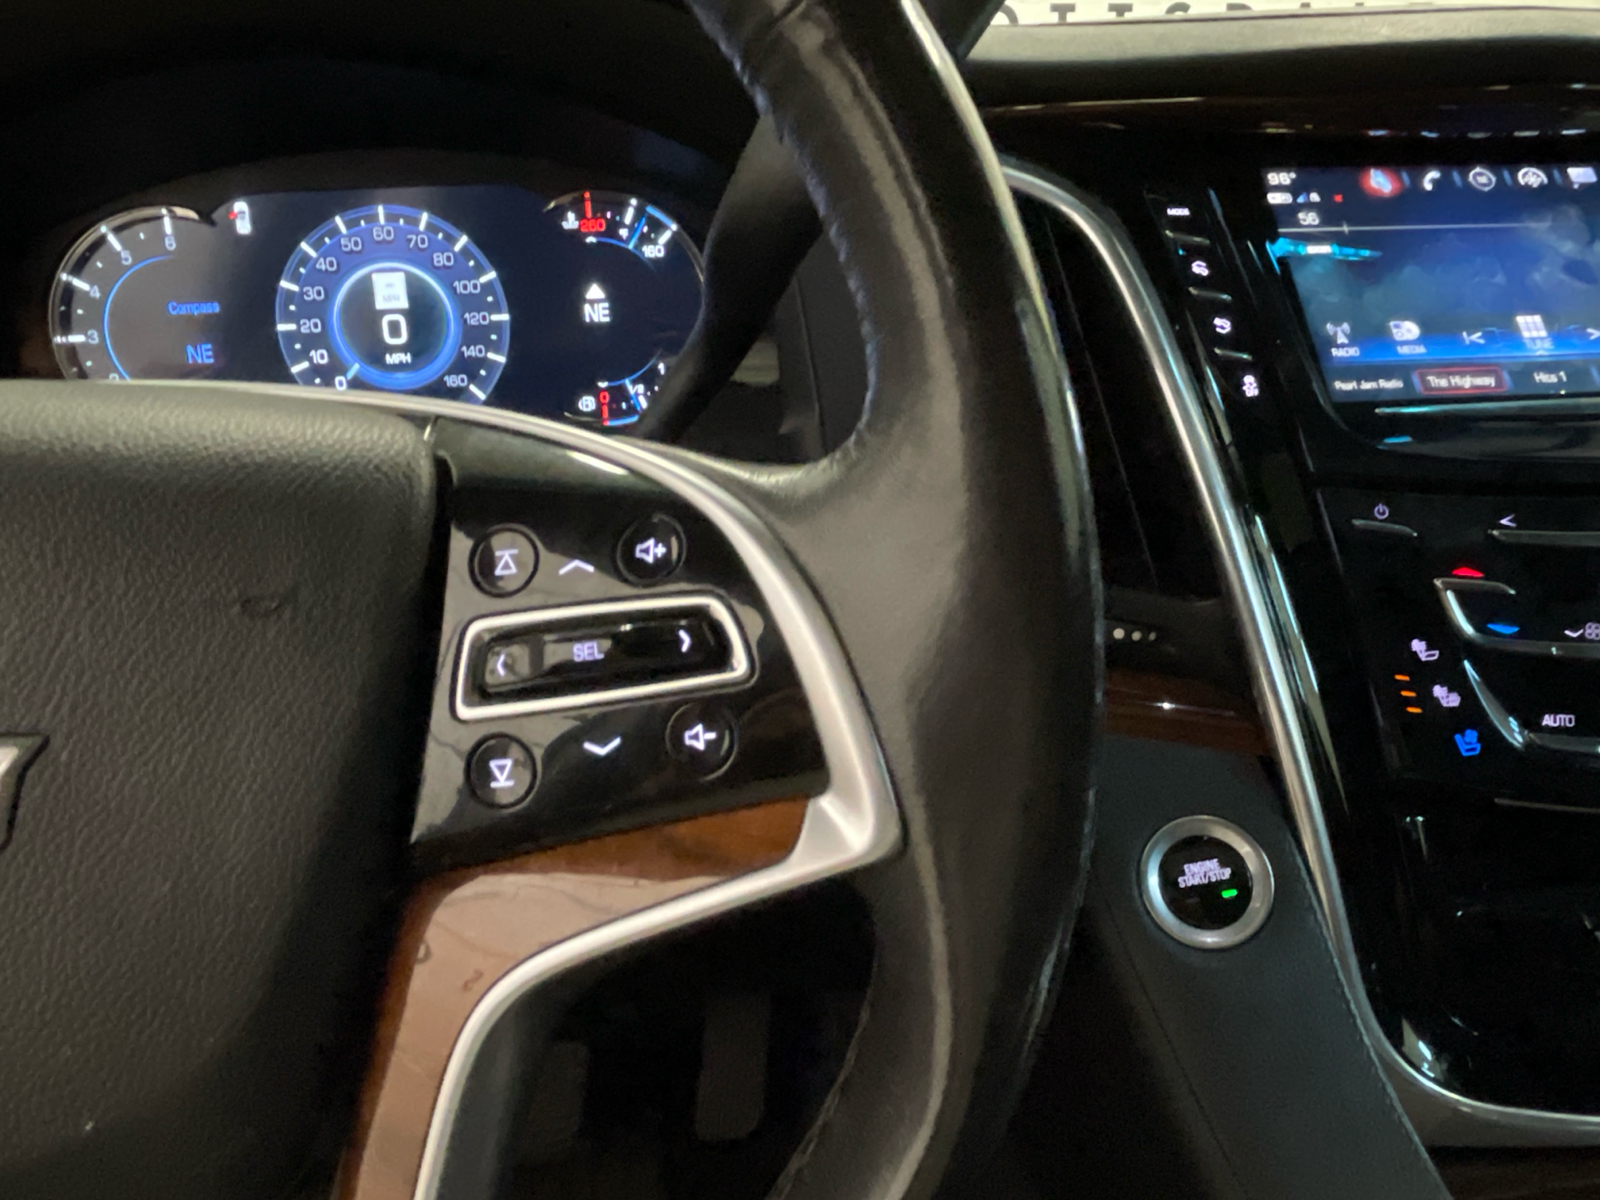 2019 Cadillac Escalade ESV Luxury 11